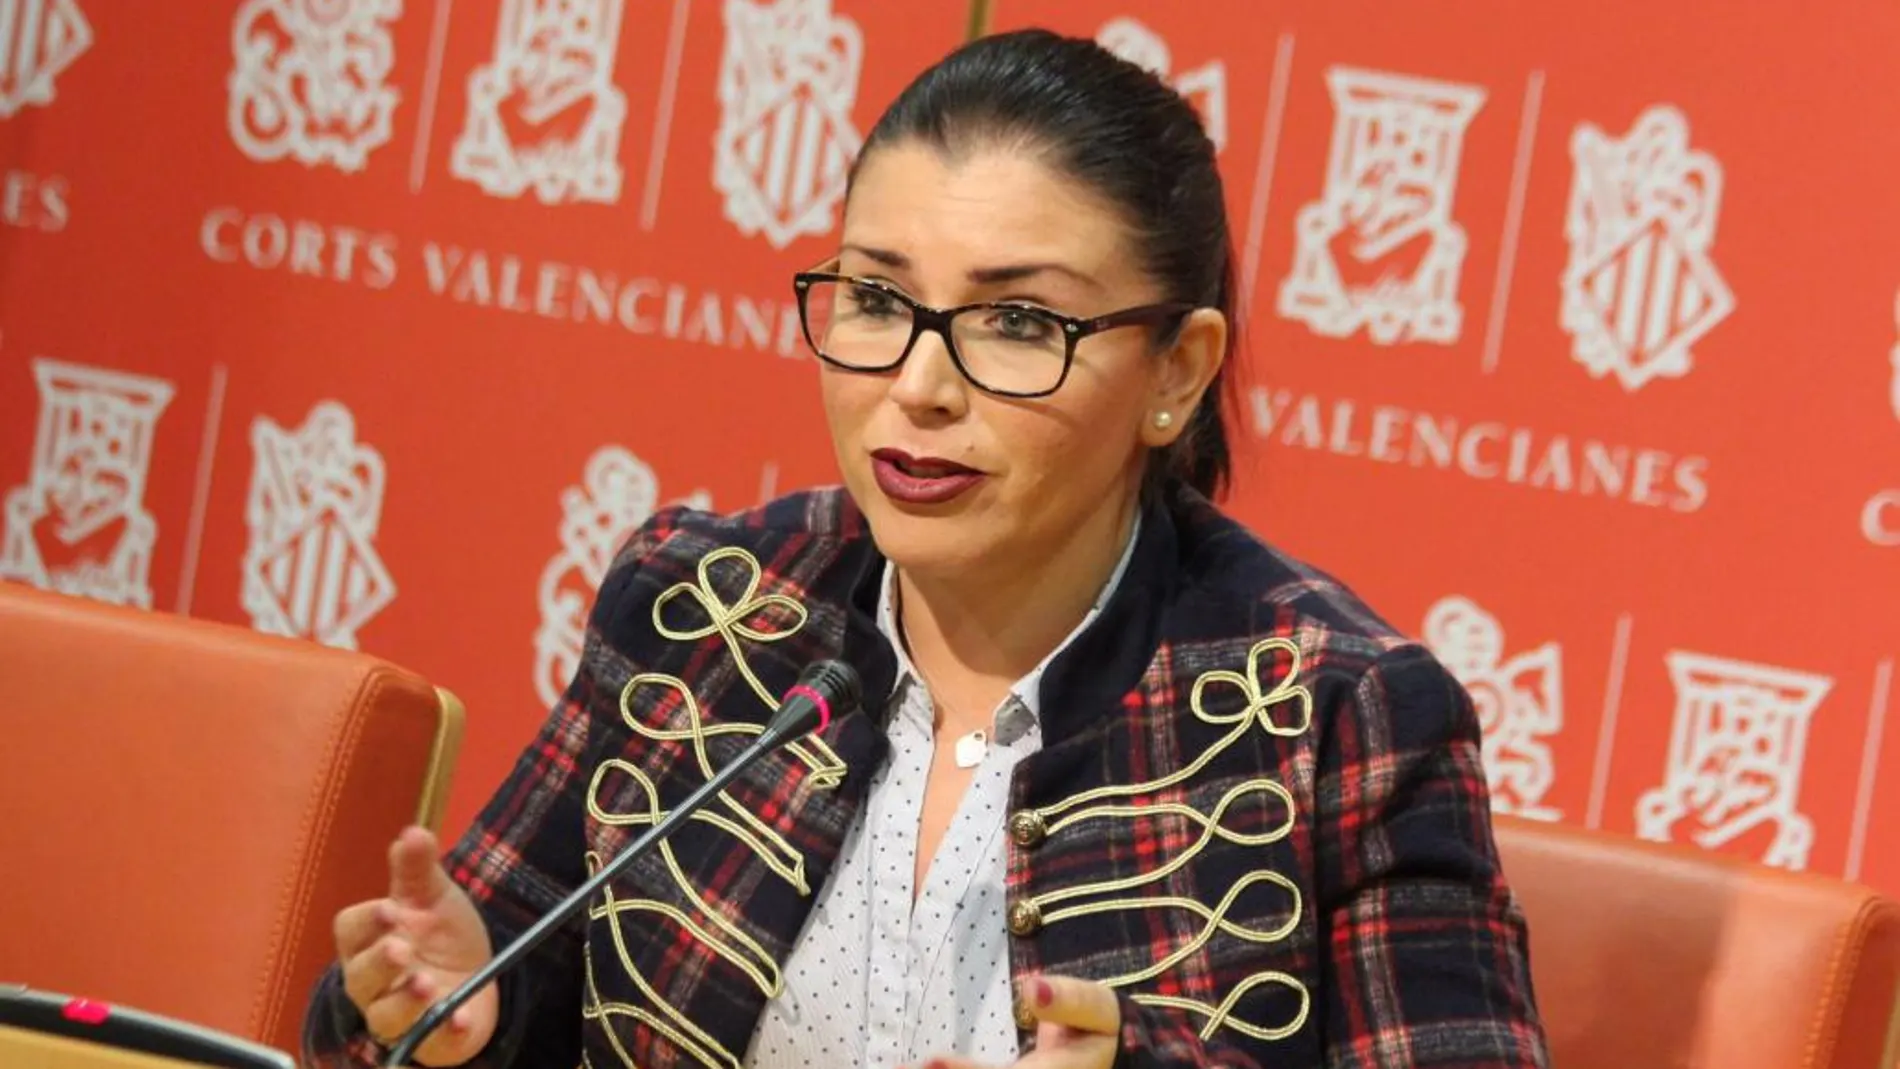 La síndica de Ciudadanos, Mari Carmen Sánchez, tiene miedo de que se haga un uso partidista de la manifestación